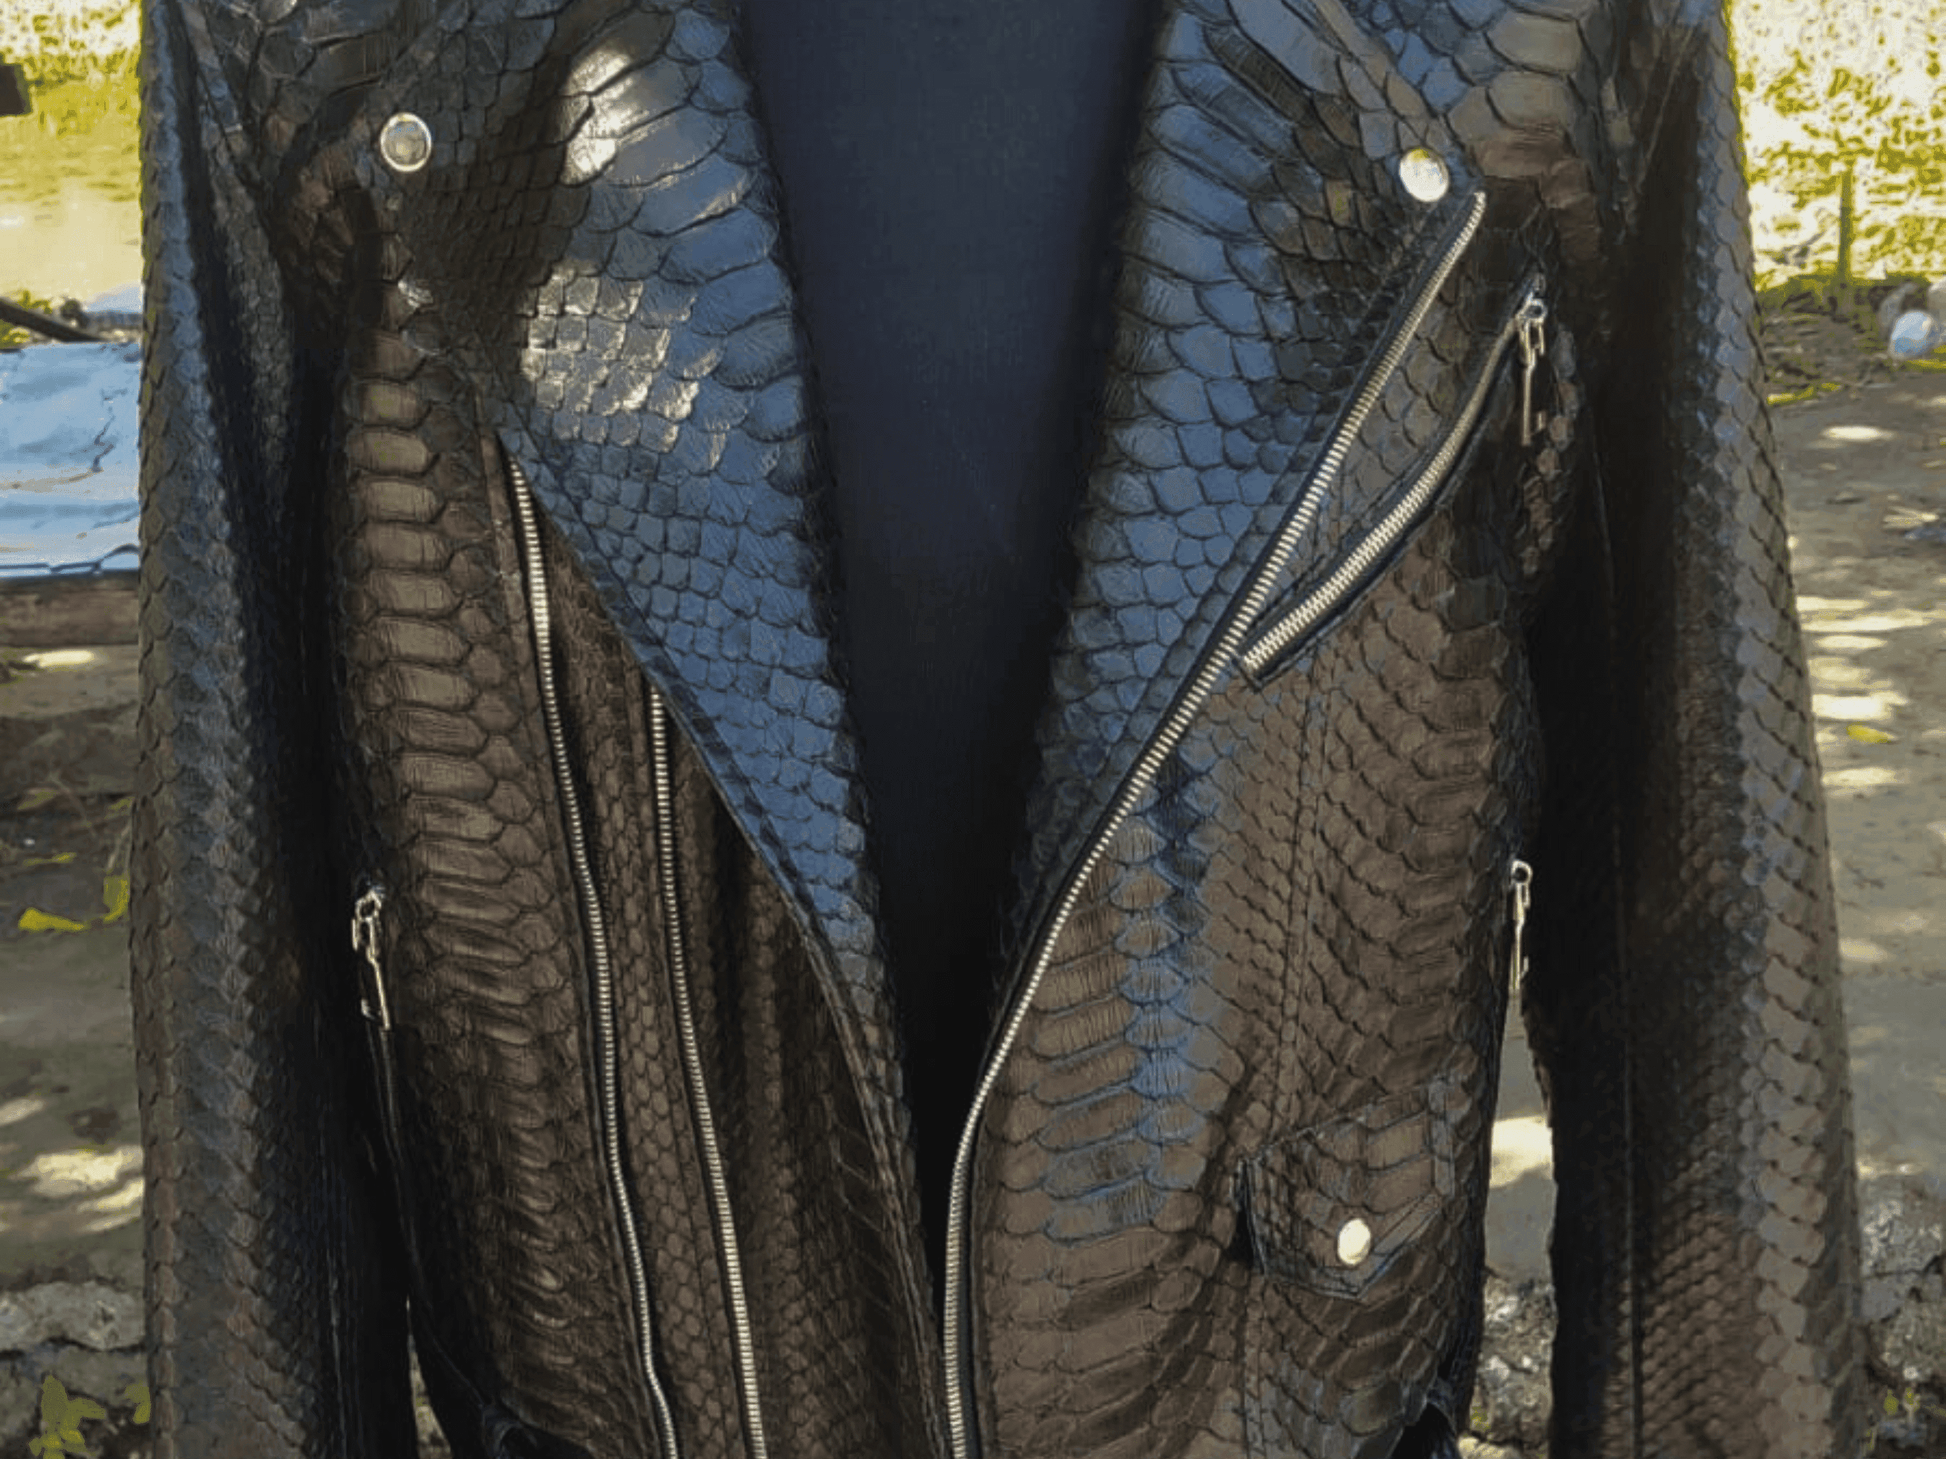 Men Jacket Black Motorcycle Leather Jacket Real Python Snake Skin with Glossy Finishing Python Jacket by LFM Fashion